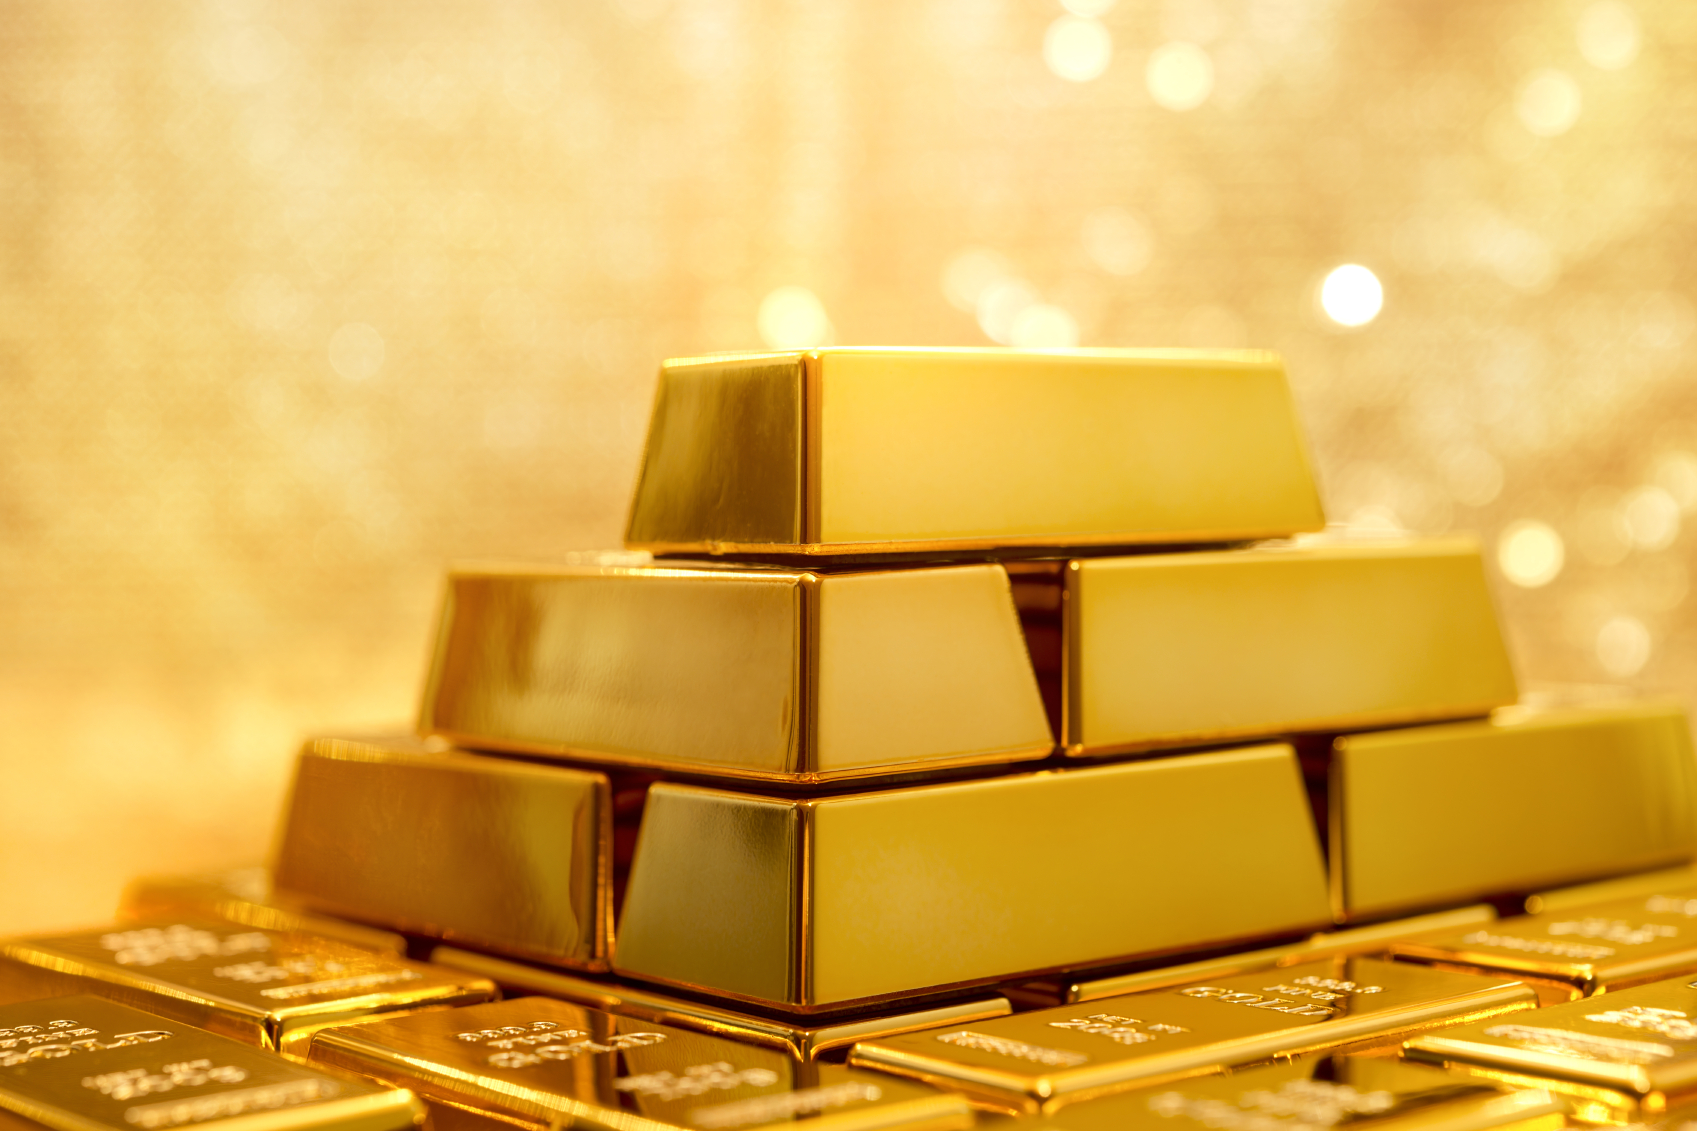 Giá vàng hôm nay ngày 19/12/2015 tăng nhẹ, trở lại mốc 33 triệu đồng/lượng tại thị trường trong nước